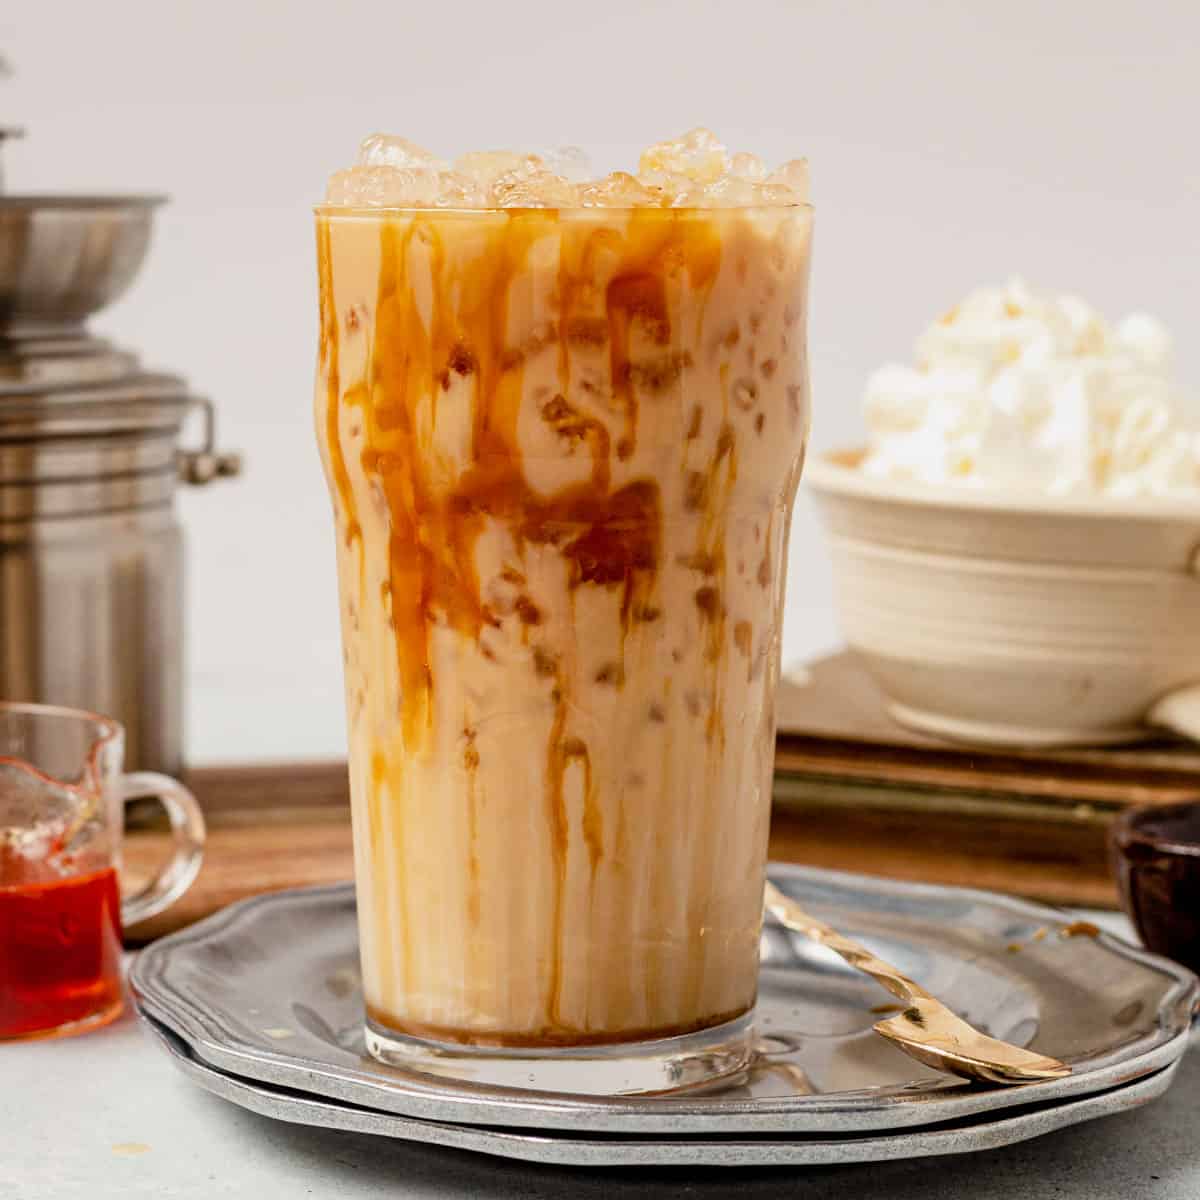 Homemade Caramel Iced Latte Recipe - The Little Blog Of Vegan